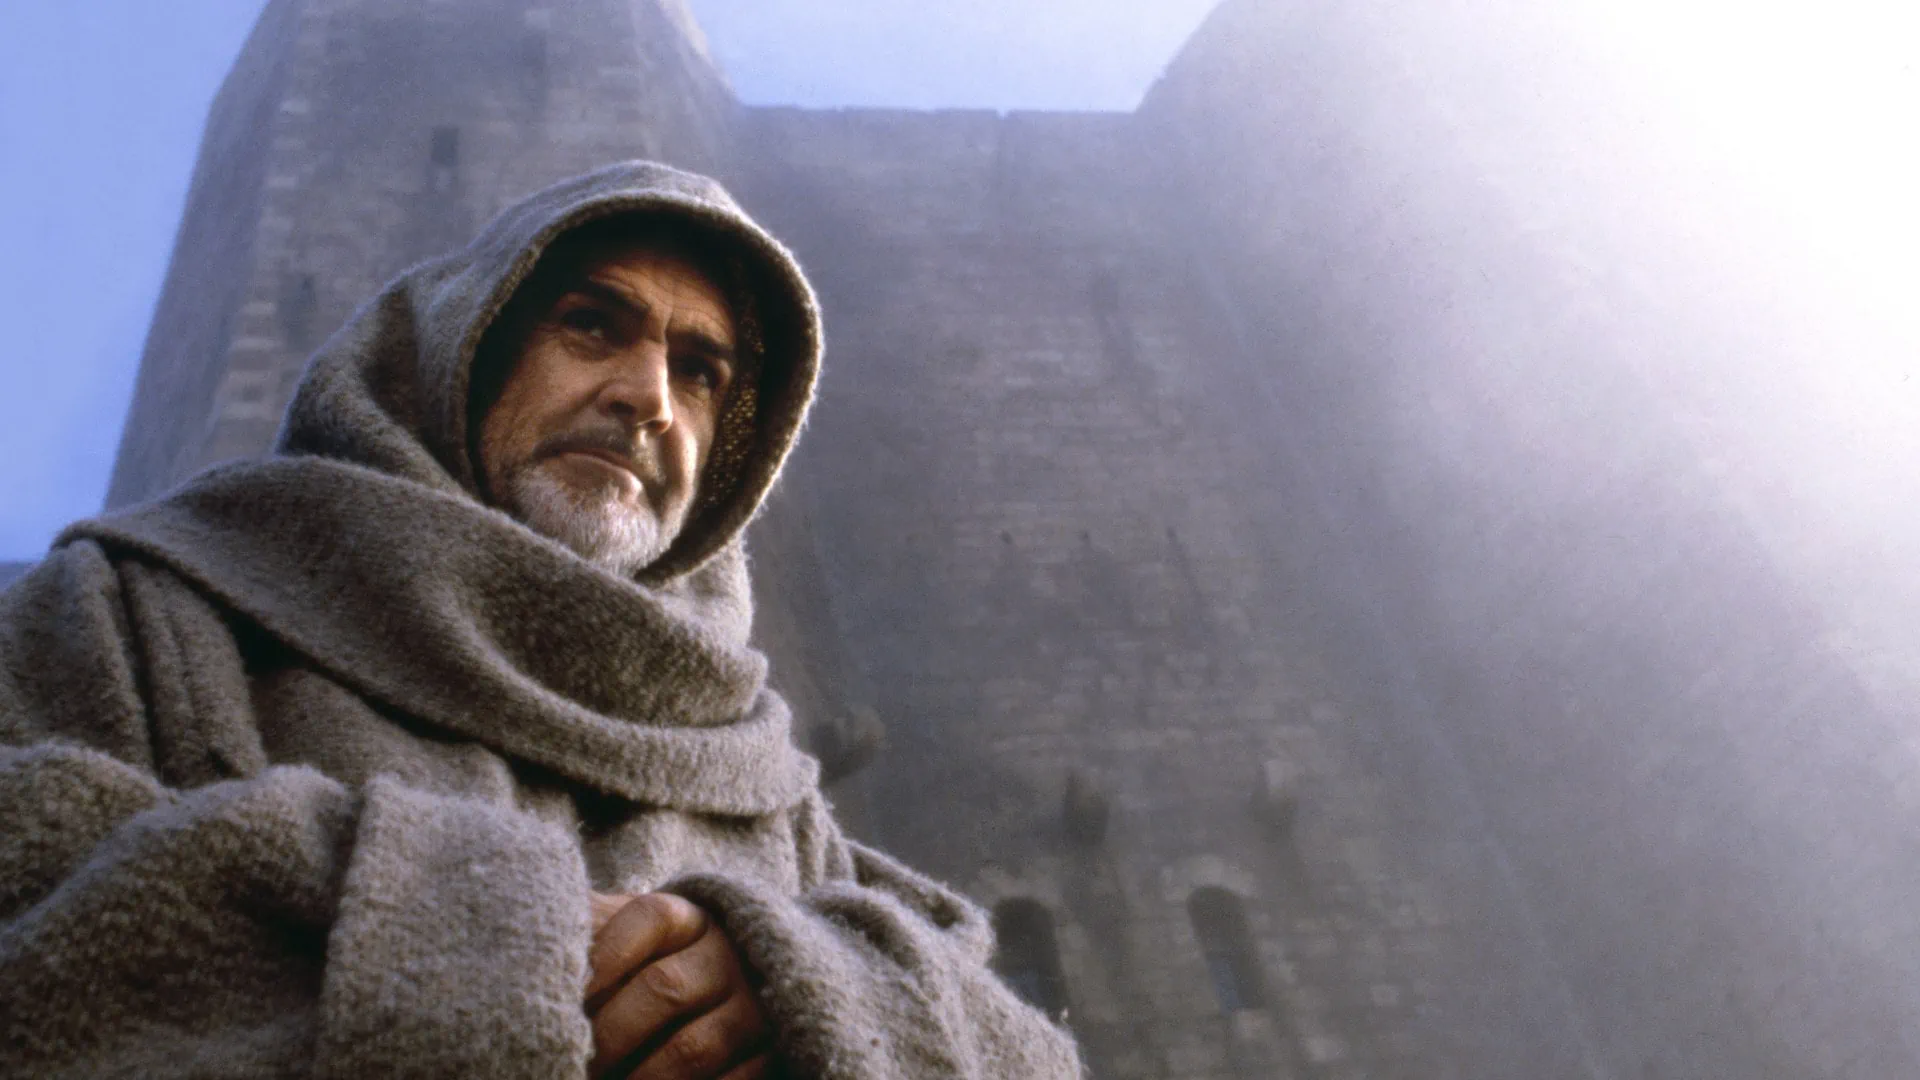 le moine franciscain Guillaume de Baskerville (Sean Connery) dans la lumière dans Le nom de la rose